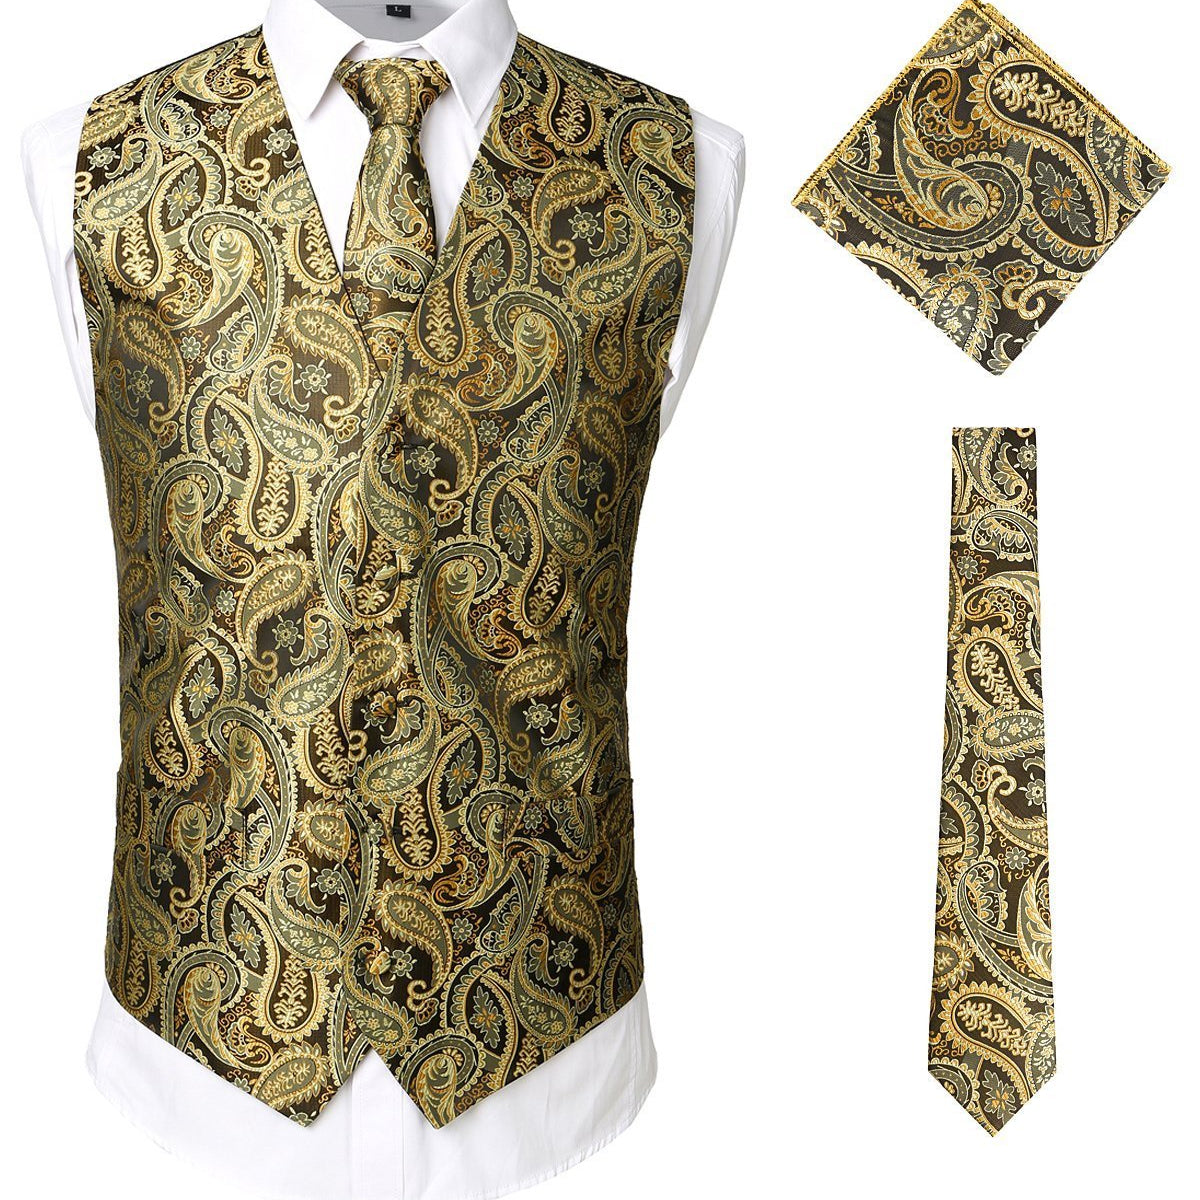 Men's Paisley Vest Necktie Square Pocket Handkerchief Set for Suit or Tuxedo